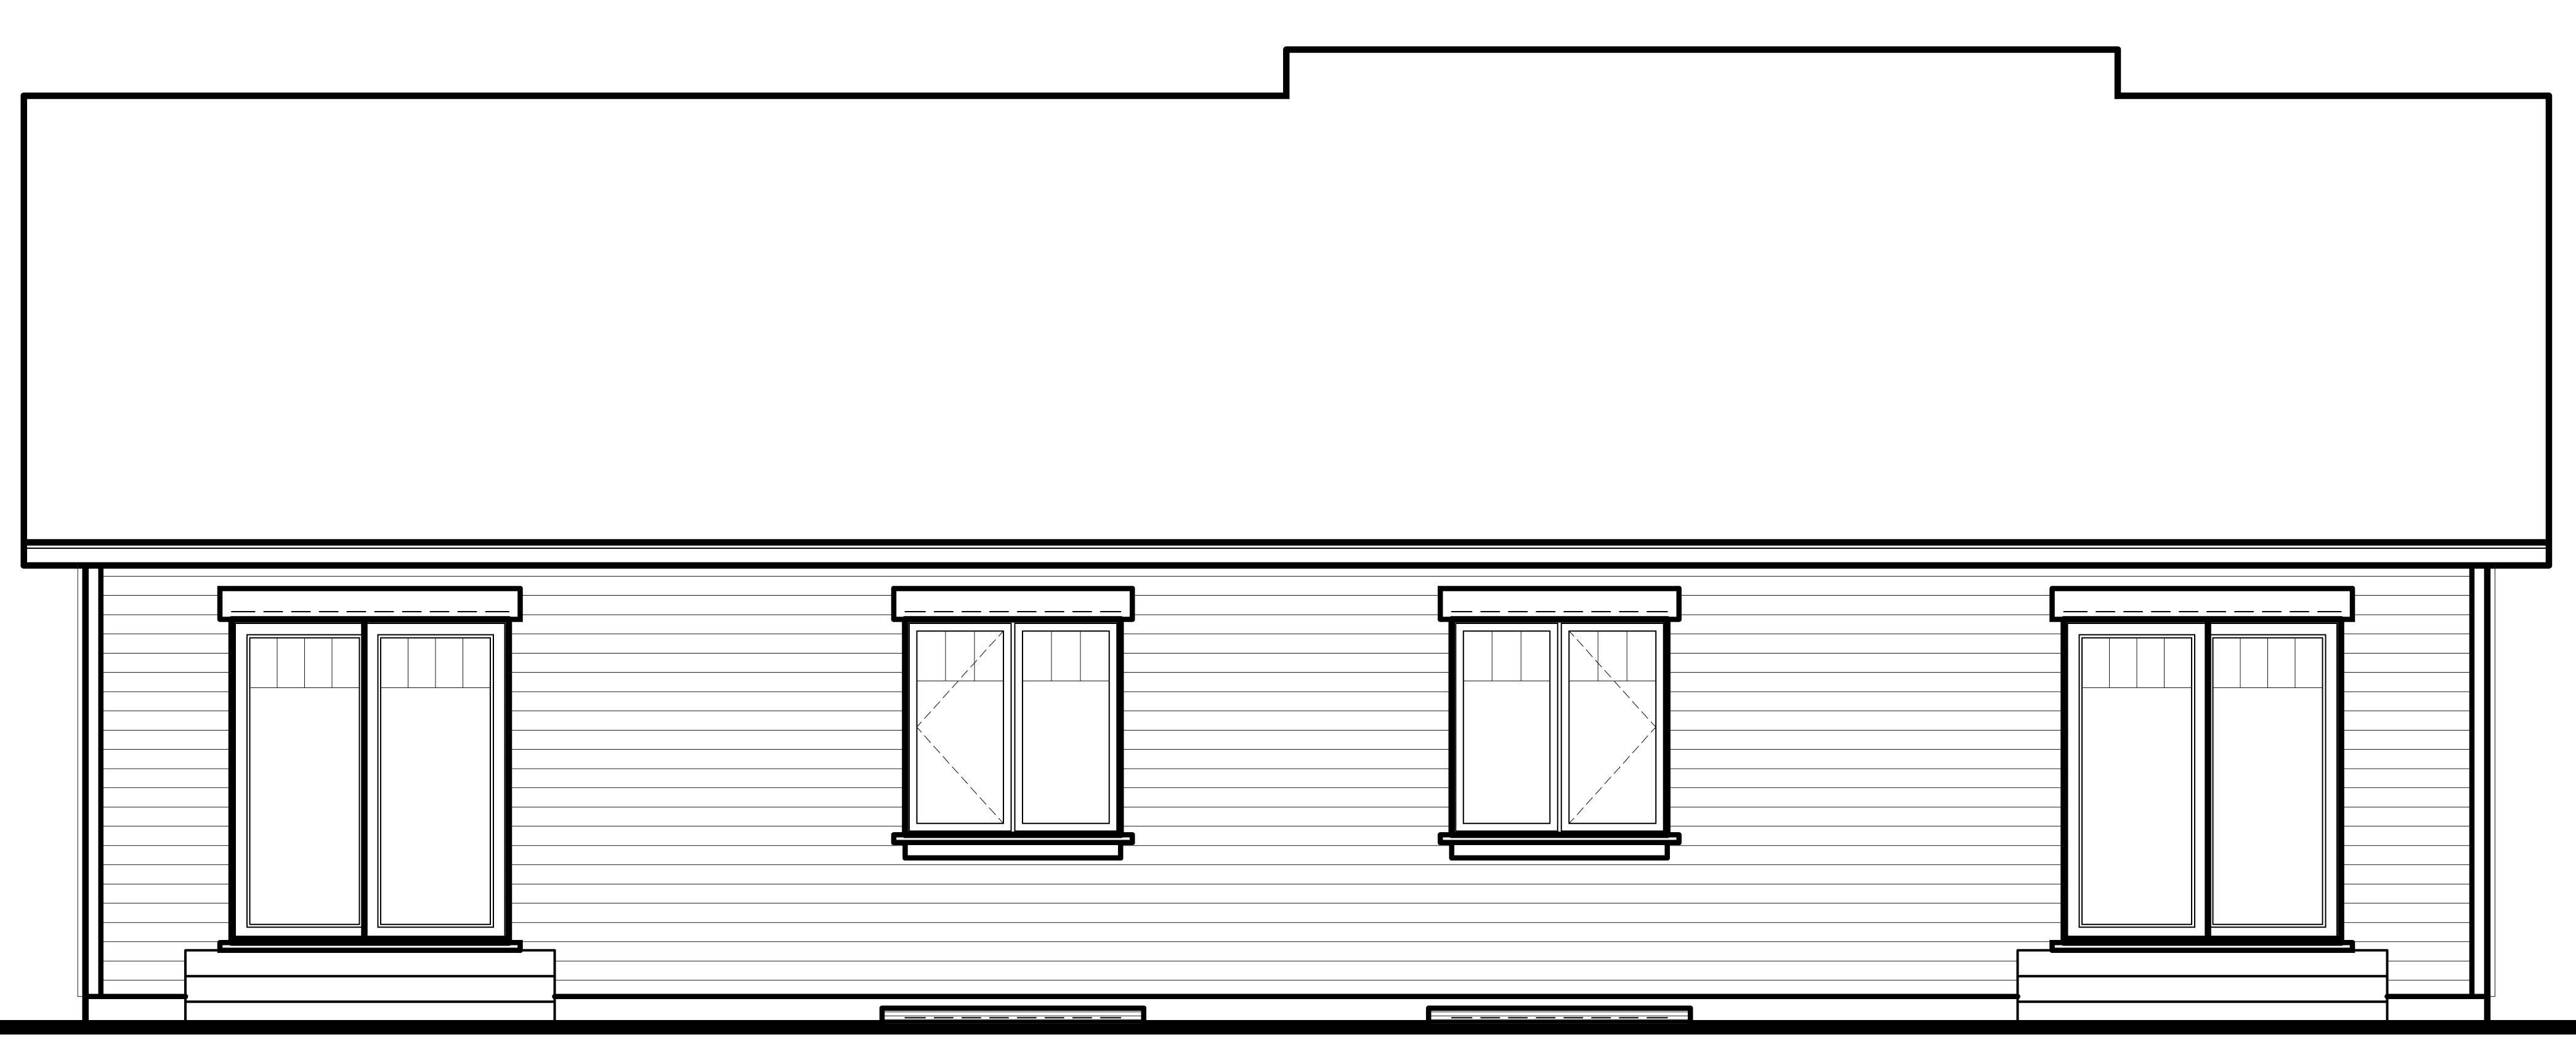 Multi Unit House  Plans  Home  Design  3050 